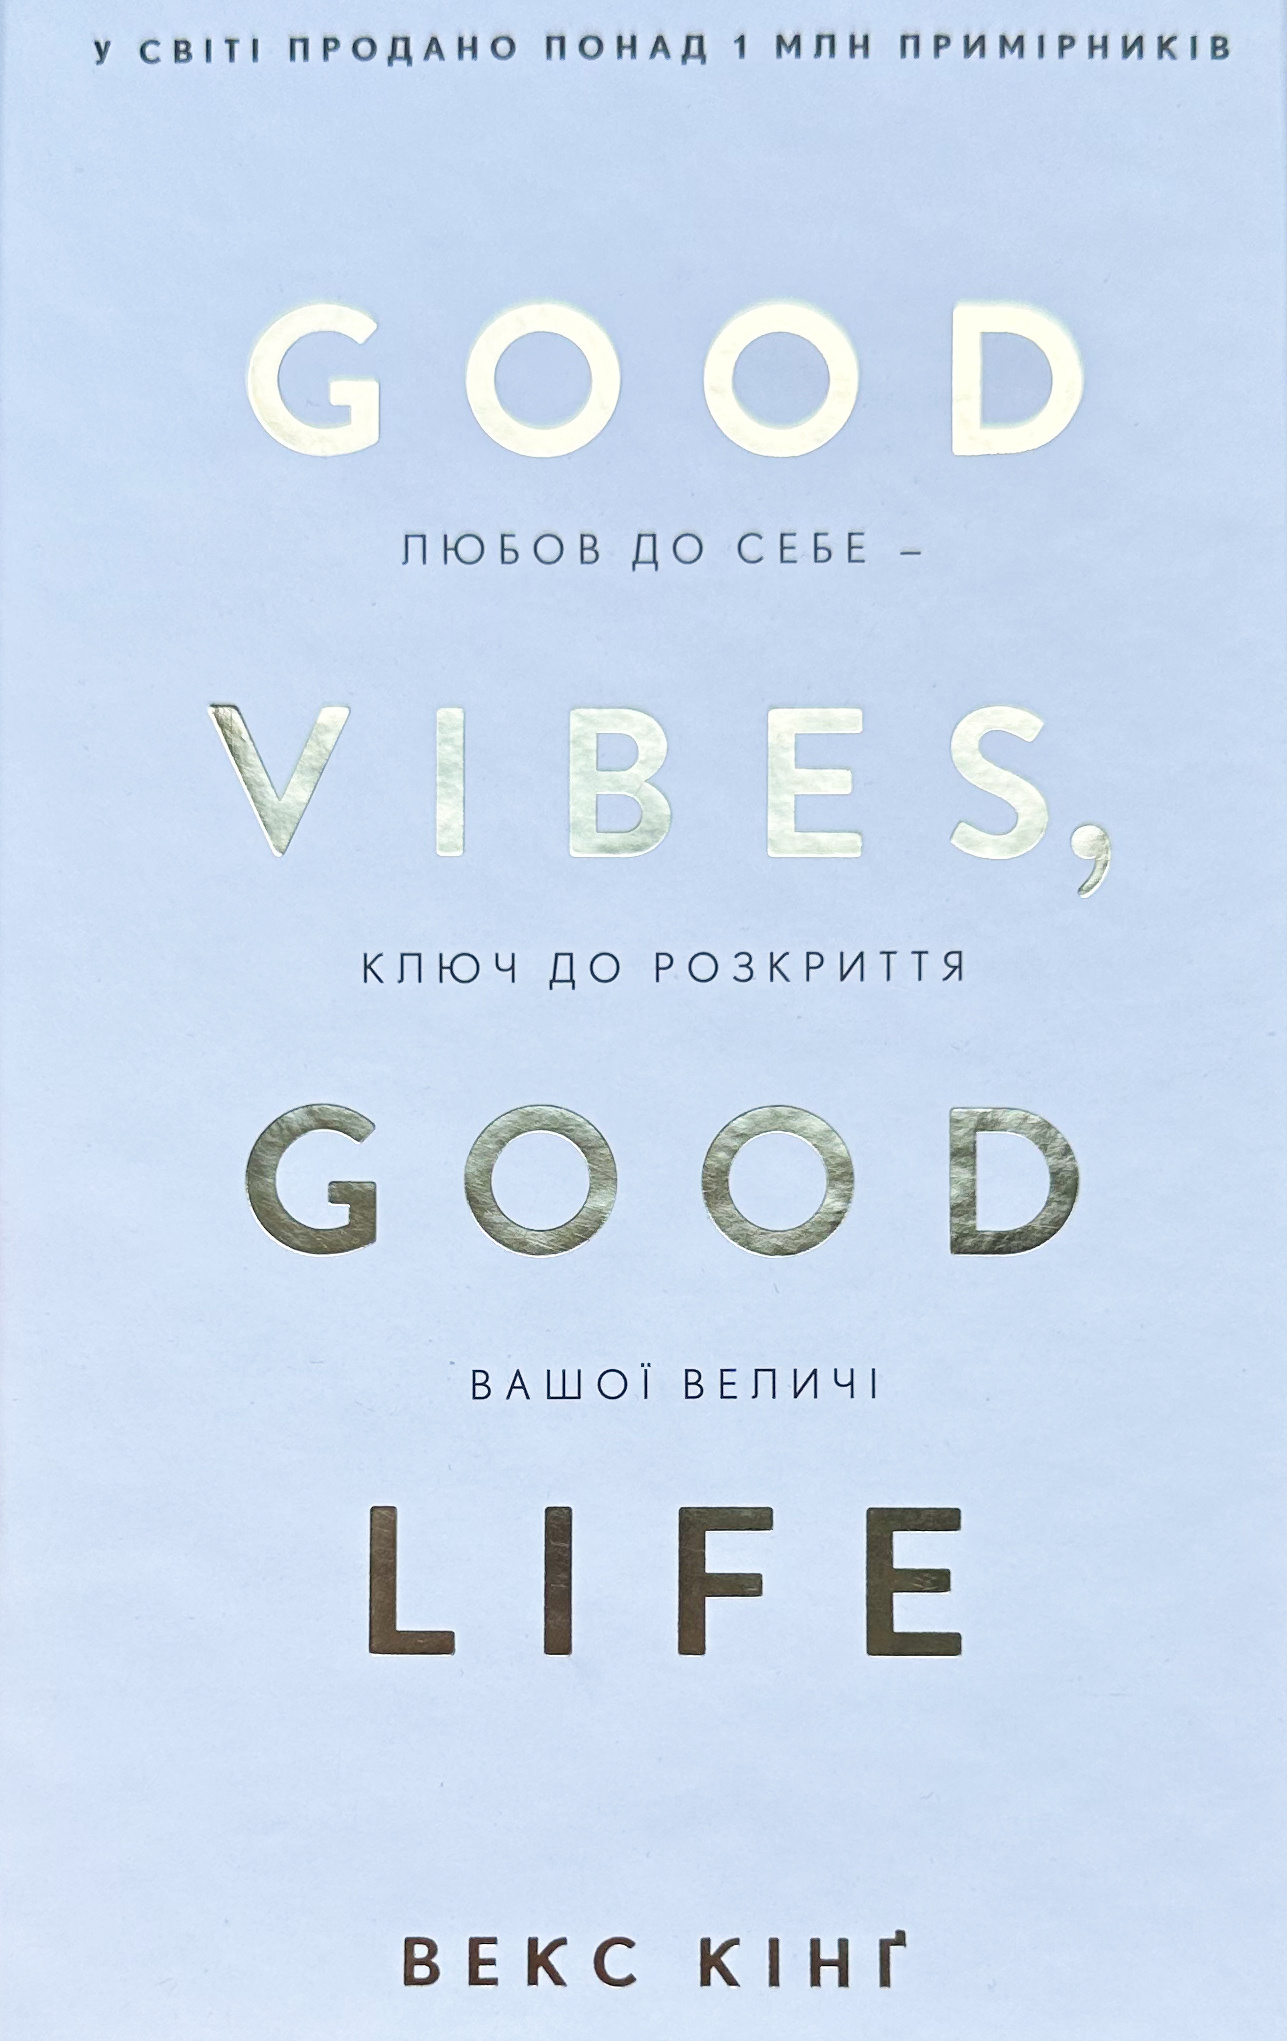 Good Vibes, Good Life. Любов до себе - ключ до розкриття вашої величі. Автор — Векс Кінґ. 